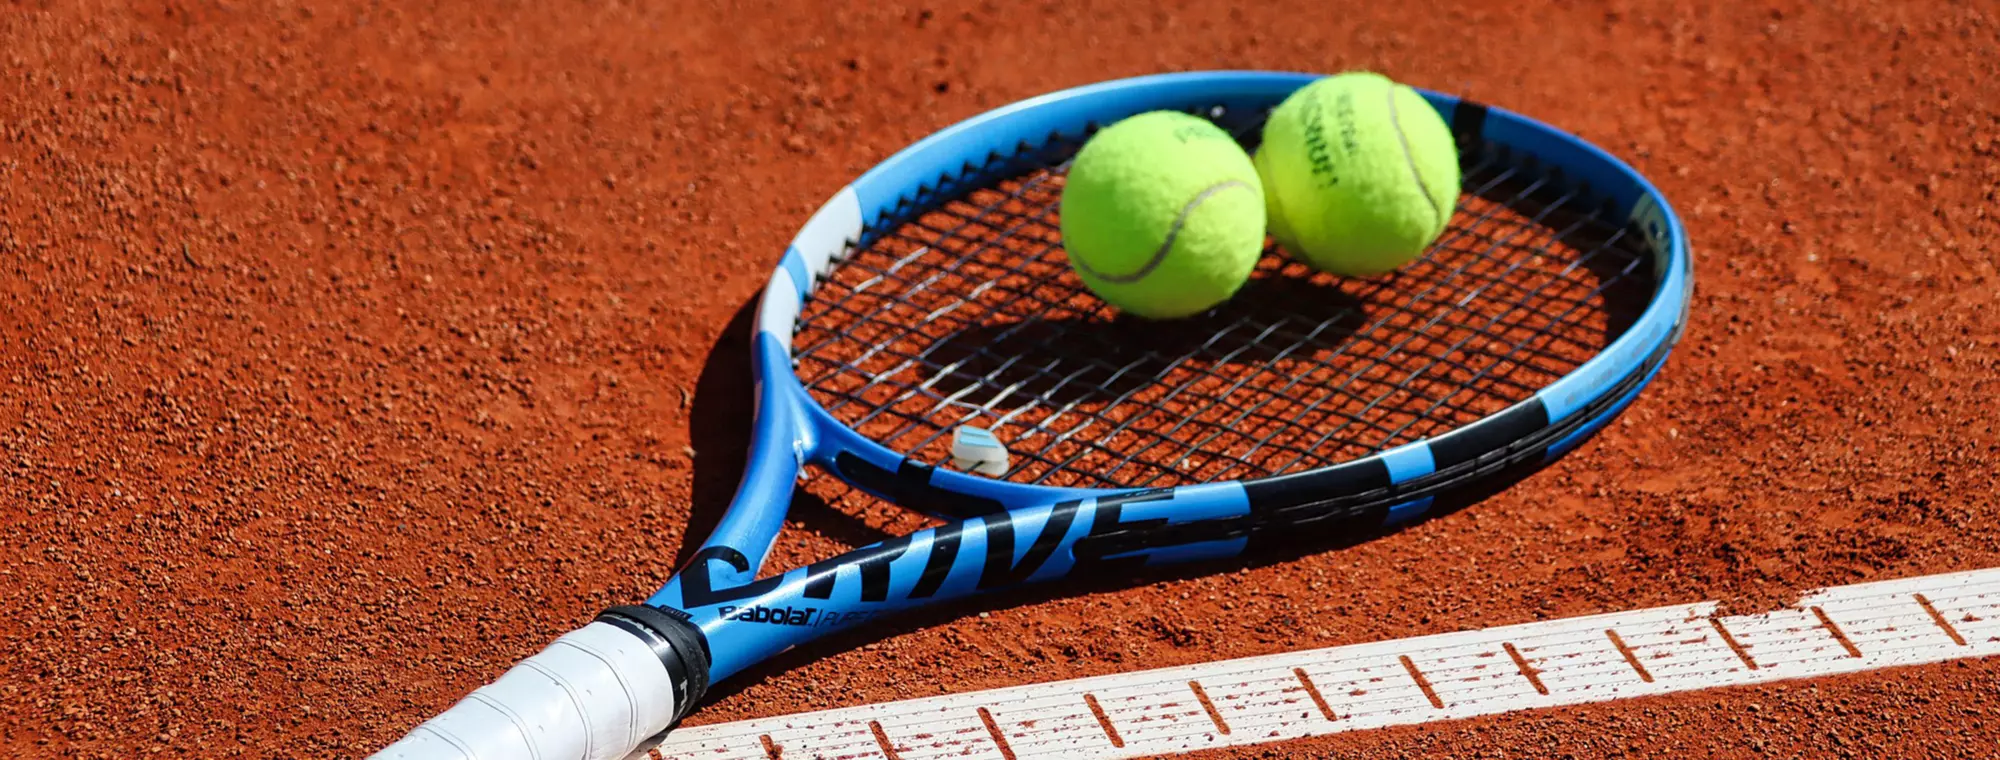 Tennis, game, set, match, tenniscourt, sandcourt, Reischach, Bruneck, south tyrol, hotel, holiday, family fun, activities, play, sport